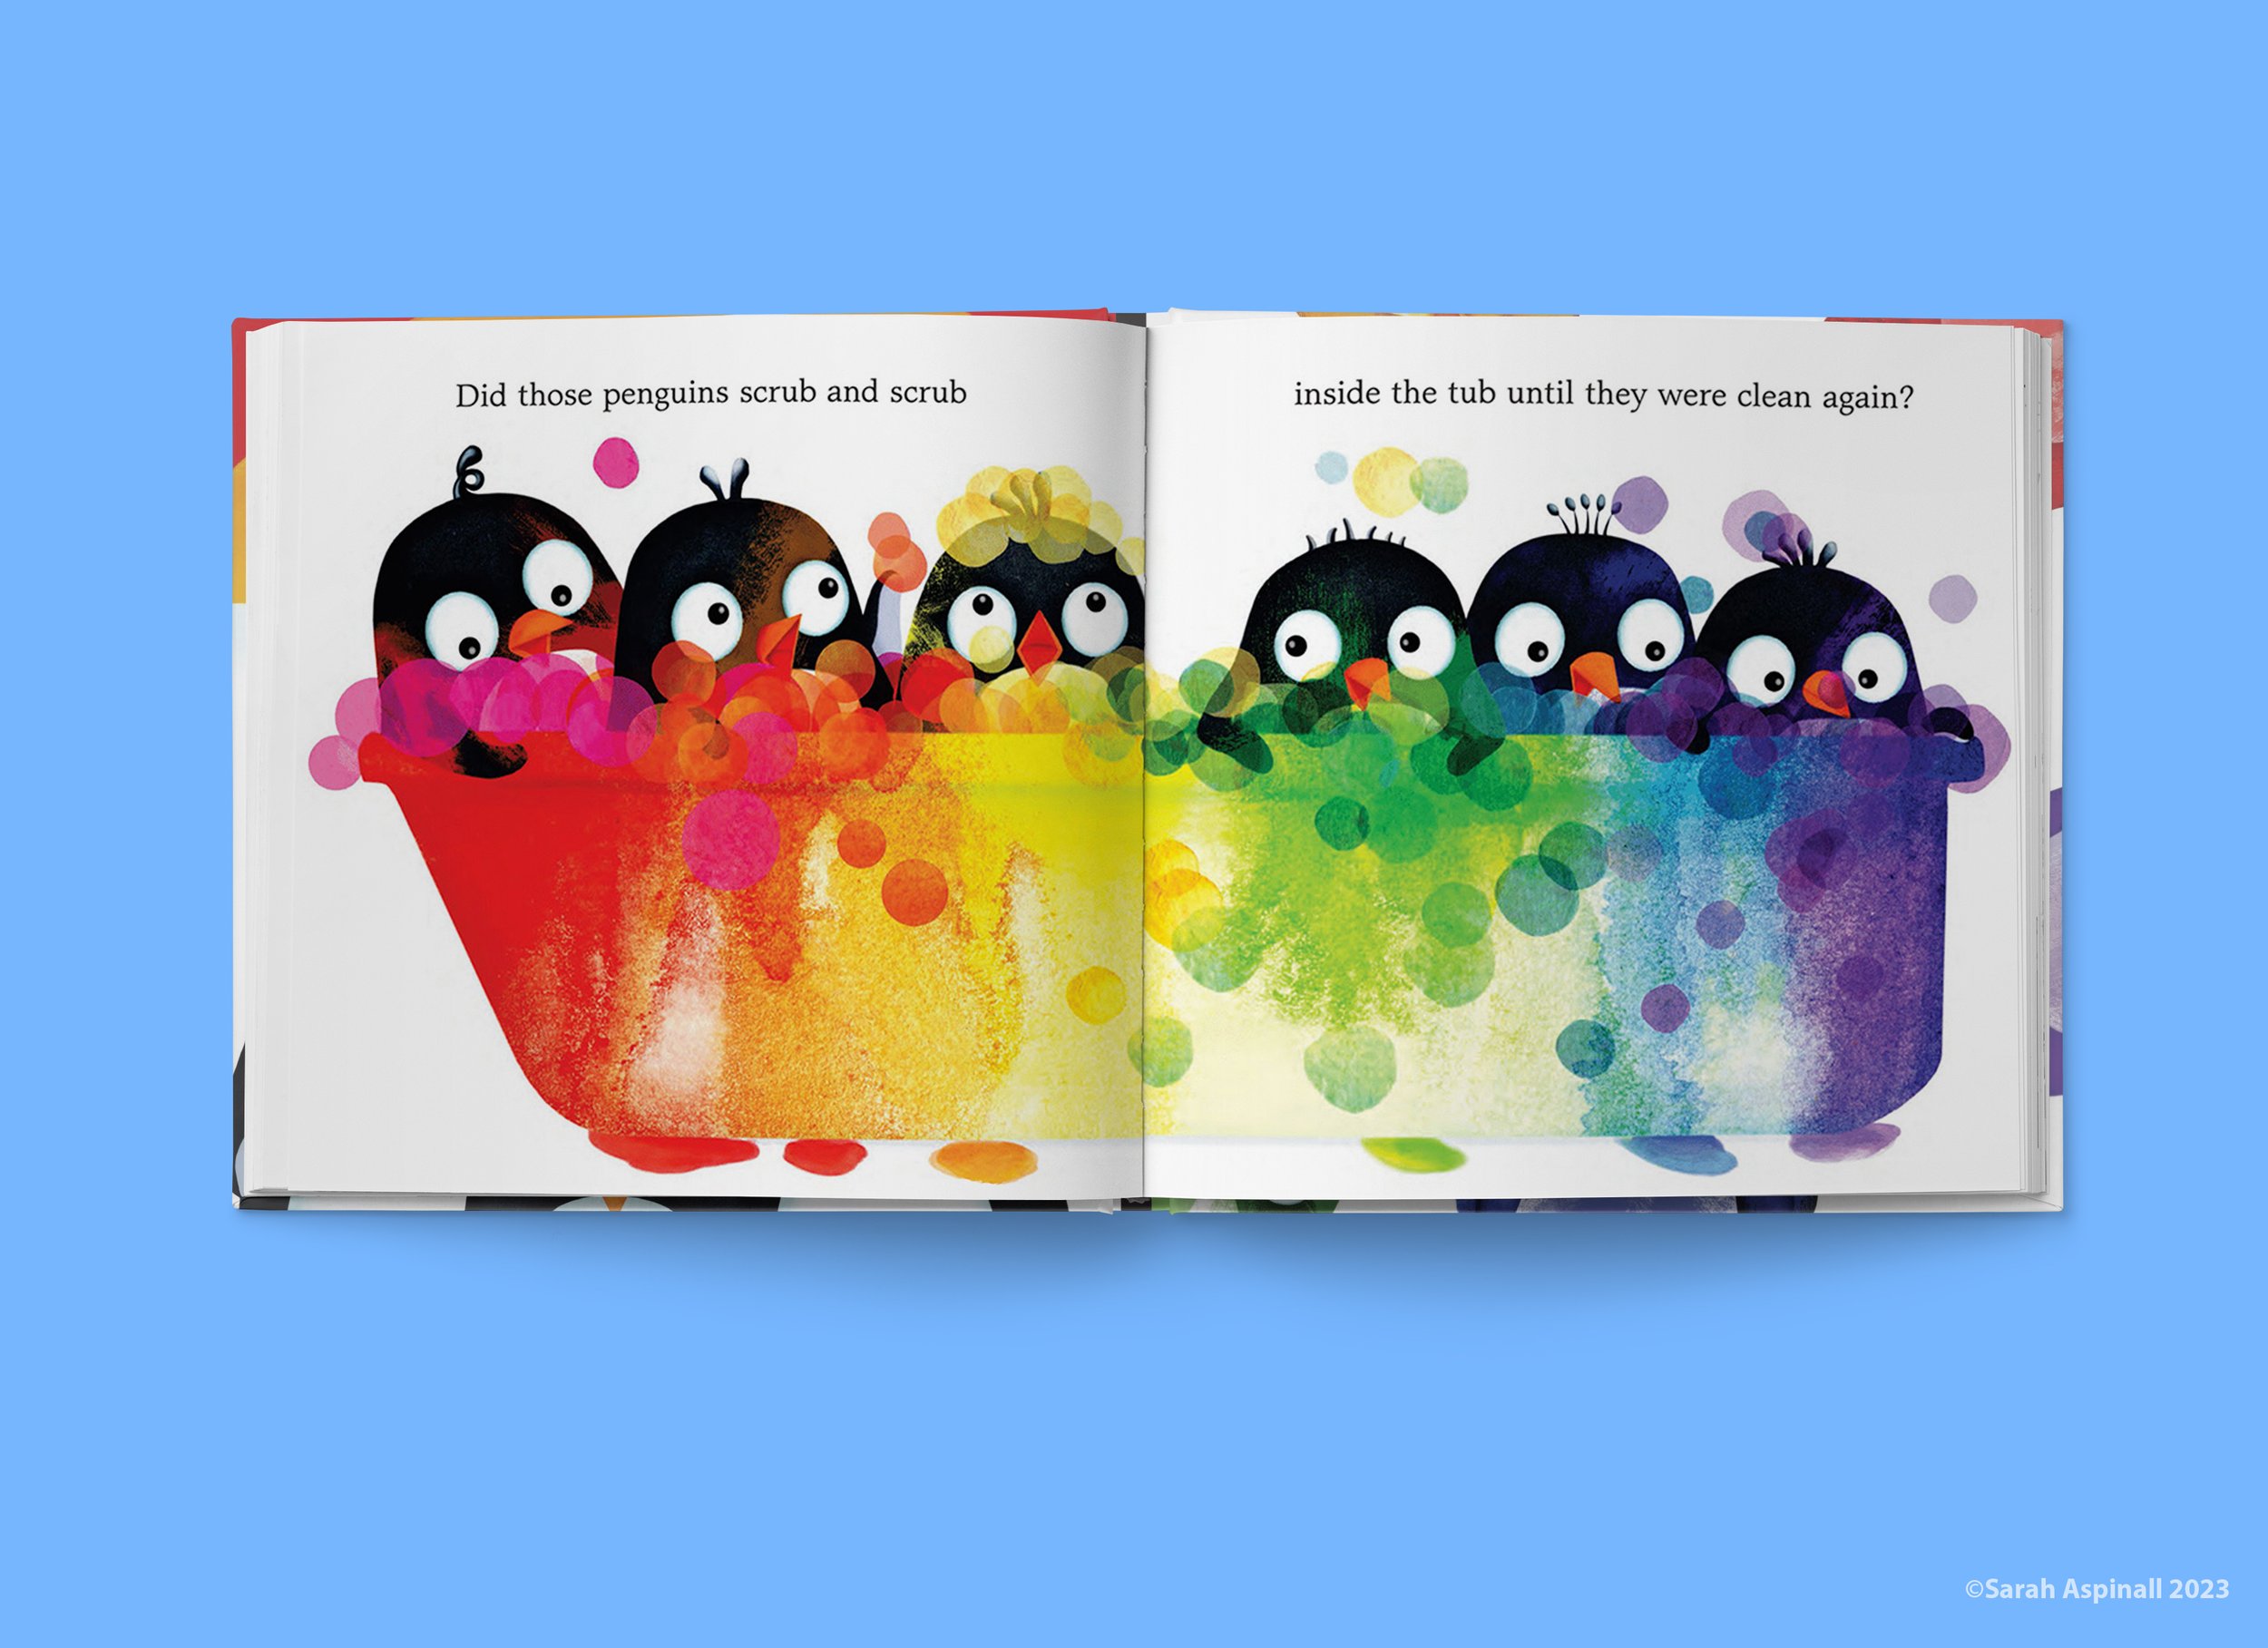 Penguins Love Colors